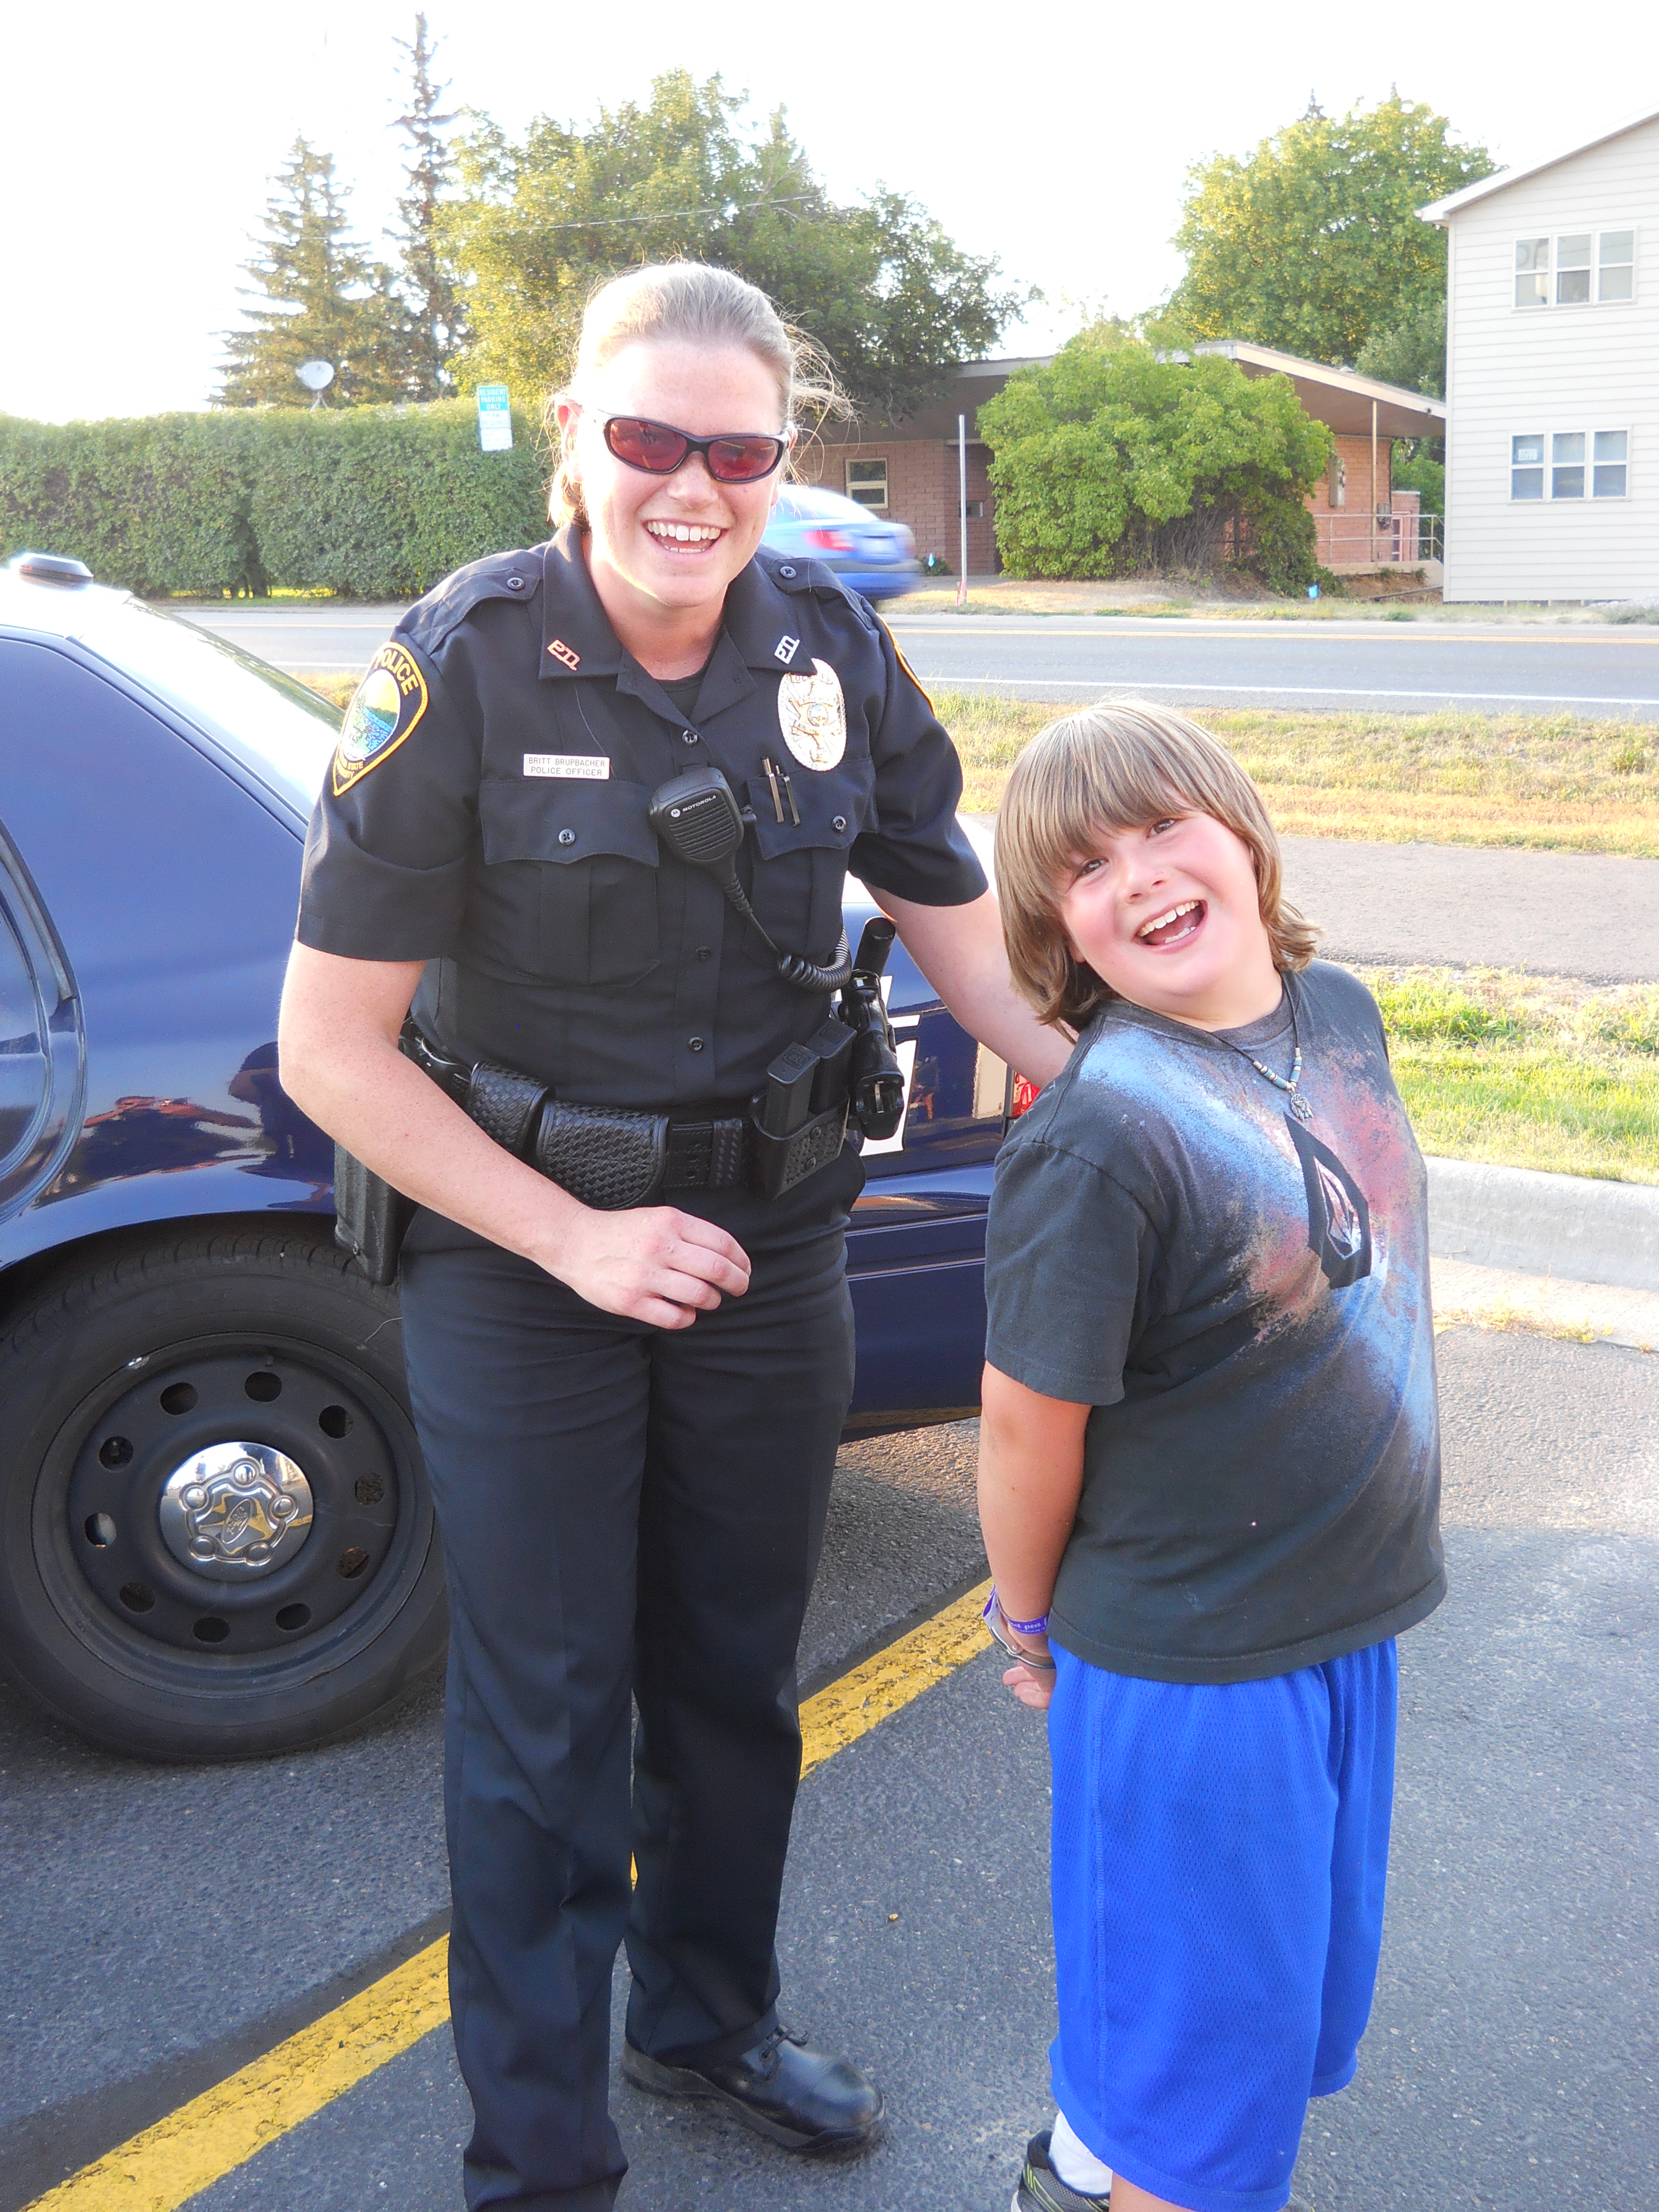 Officer Brupbacher with kid arrested